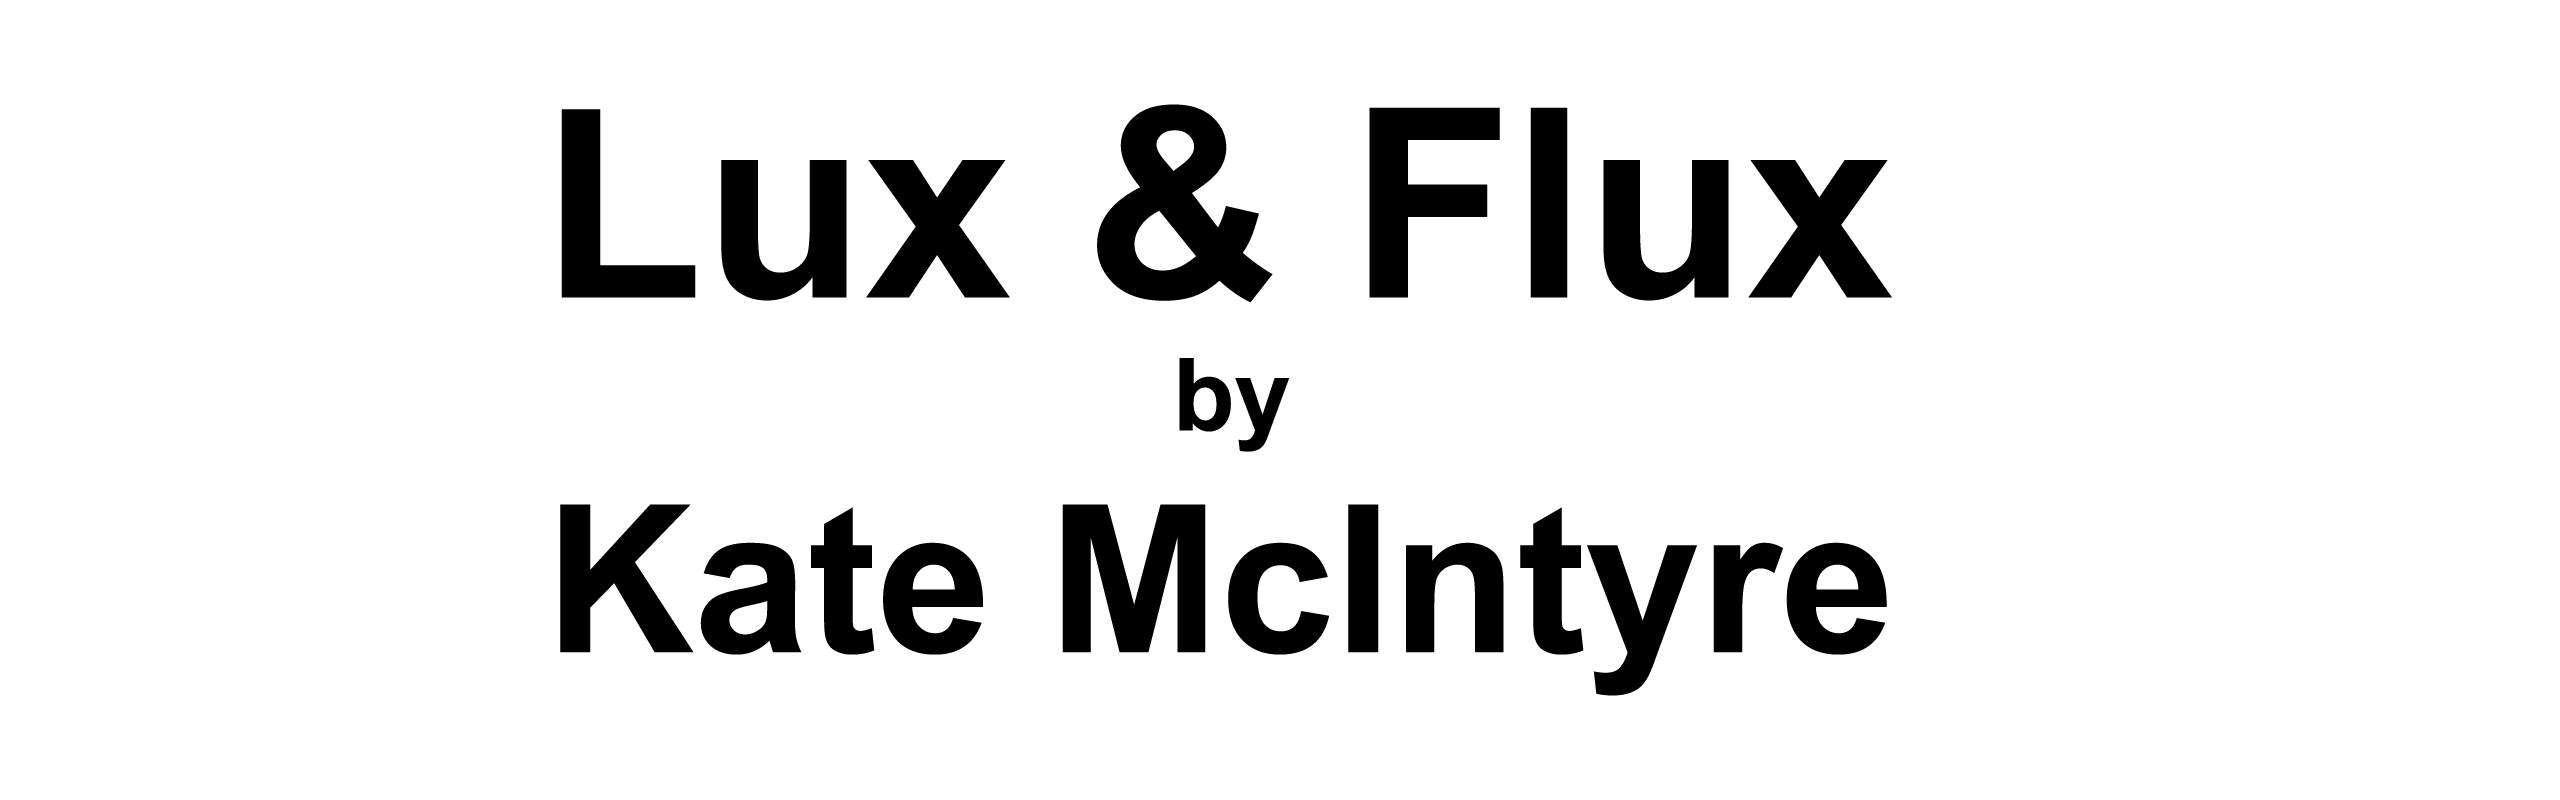 Lux & Flux